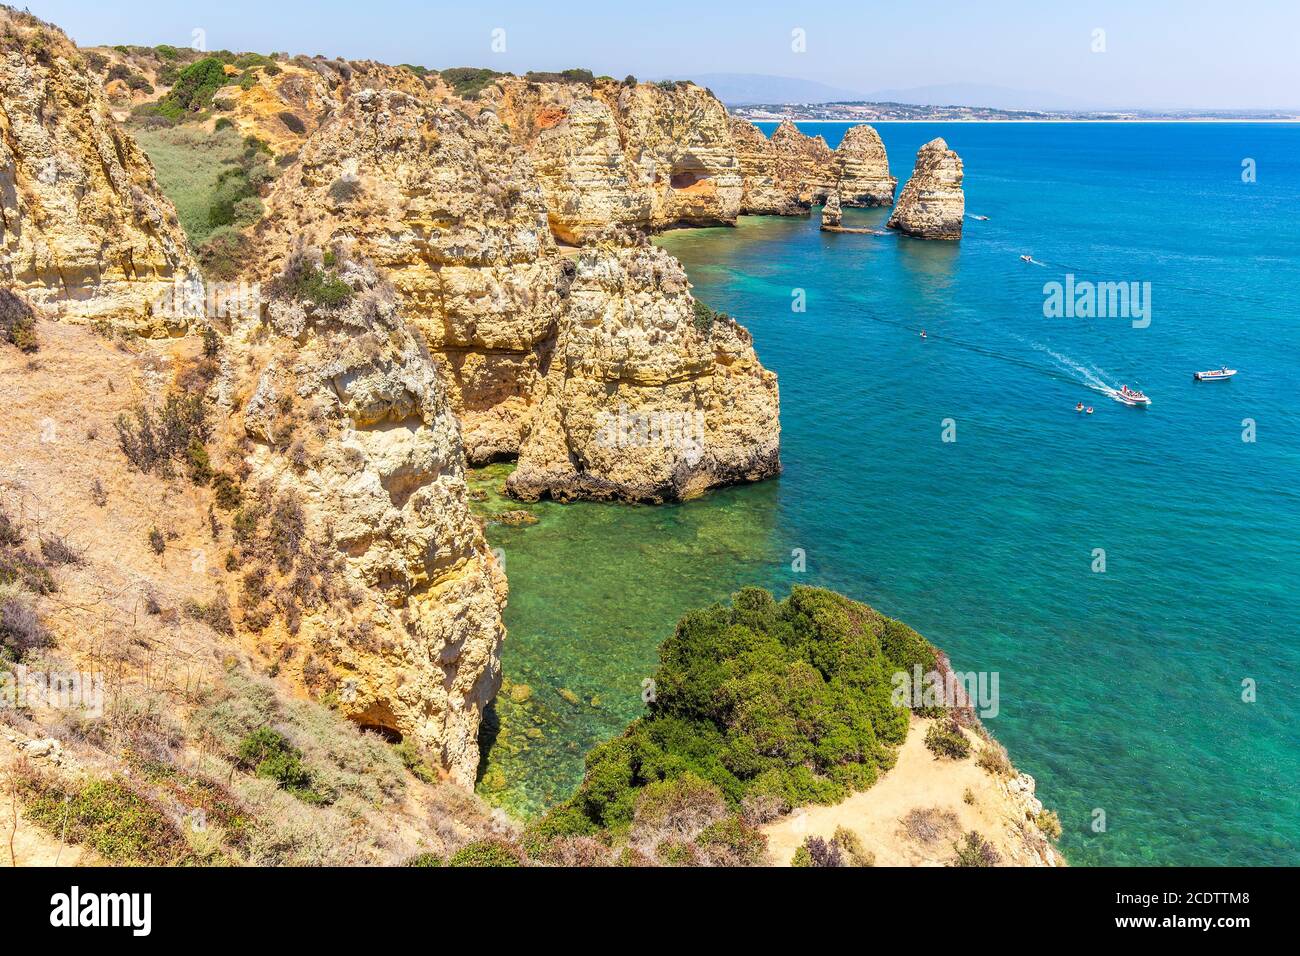 Portuguese coast with rocks and blue sea Stock Photo